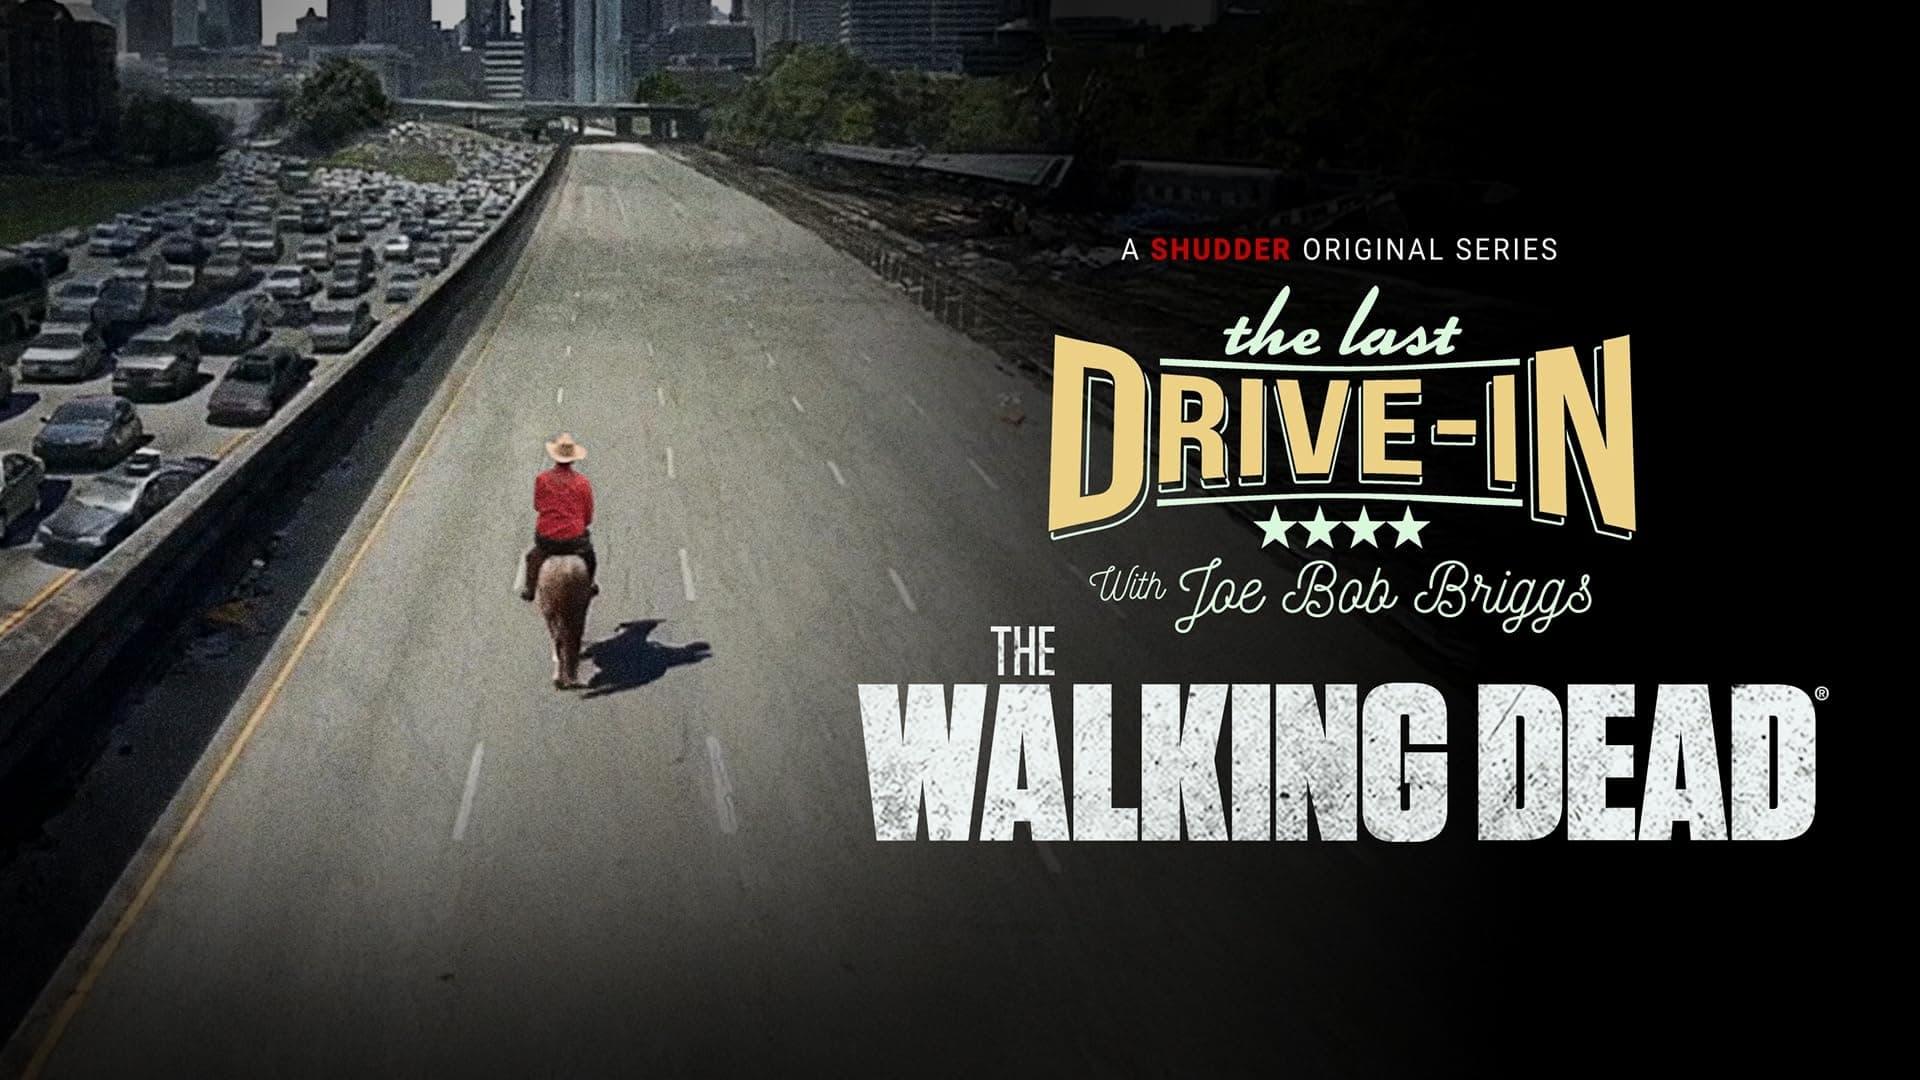 The Last Drive-in: The Walking Dead backdrop